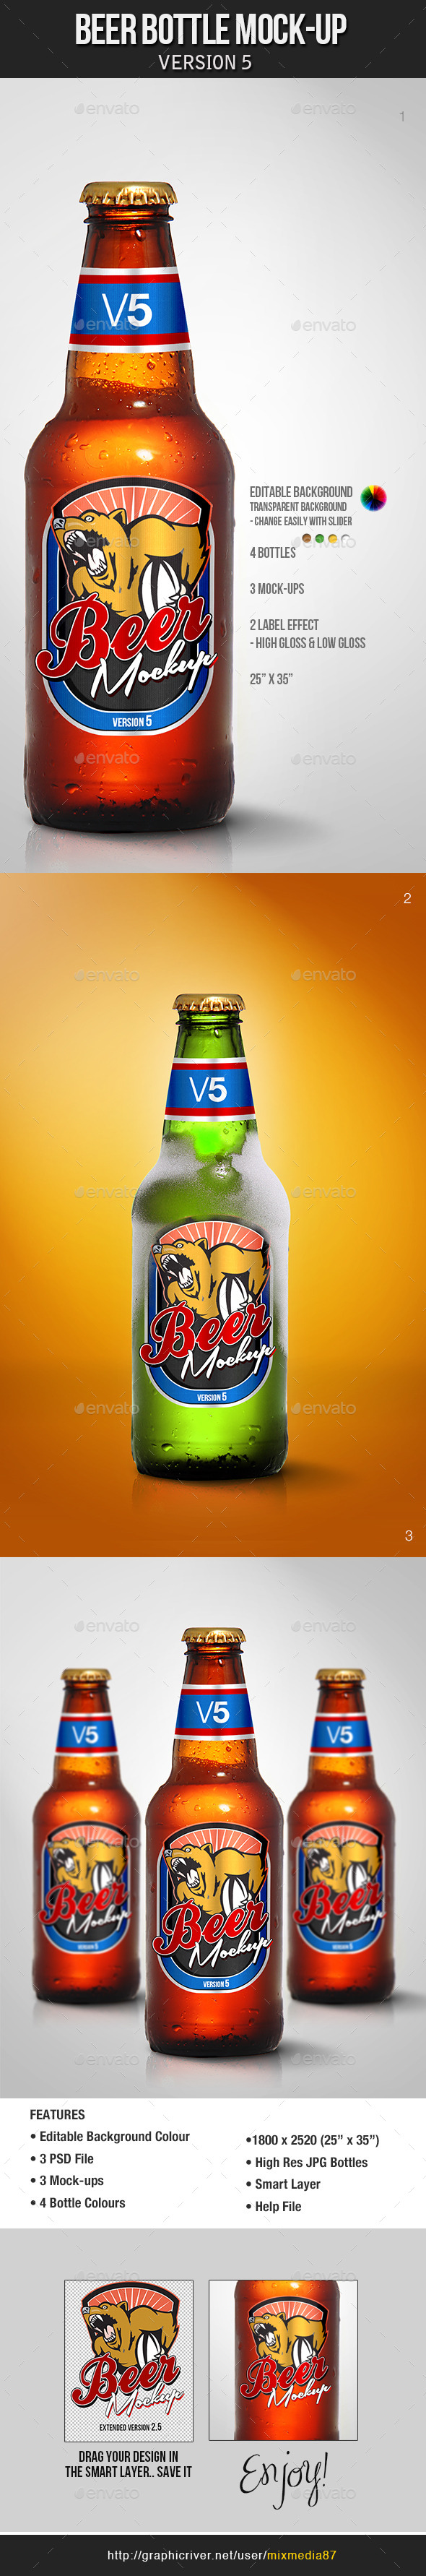 Beer Bottle Mockup V5